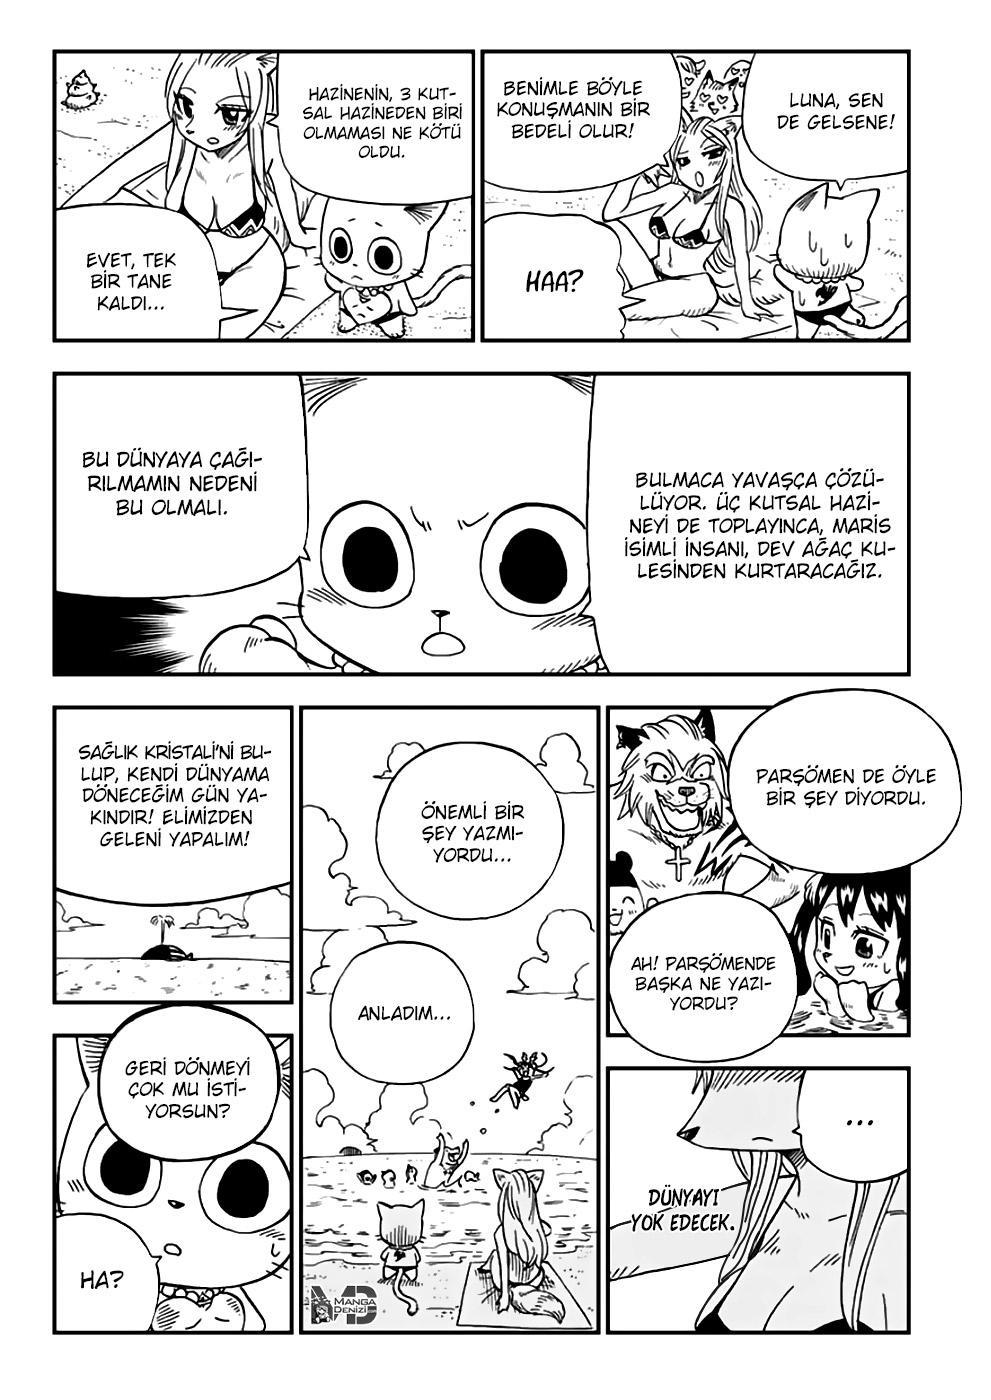 Fairy Tail: Happy's Great Adventure mangasının 41 bölümünün 5. sayfasını okuyorsunuz.